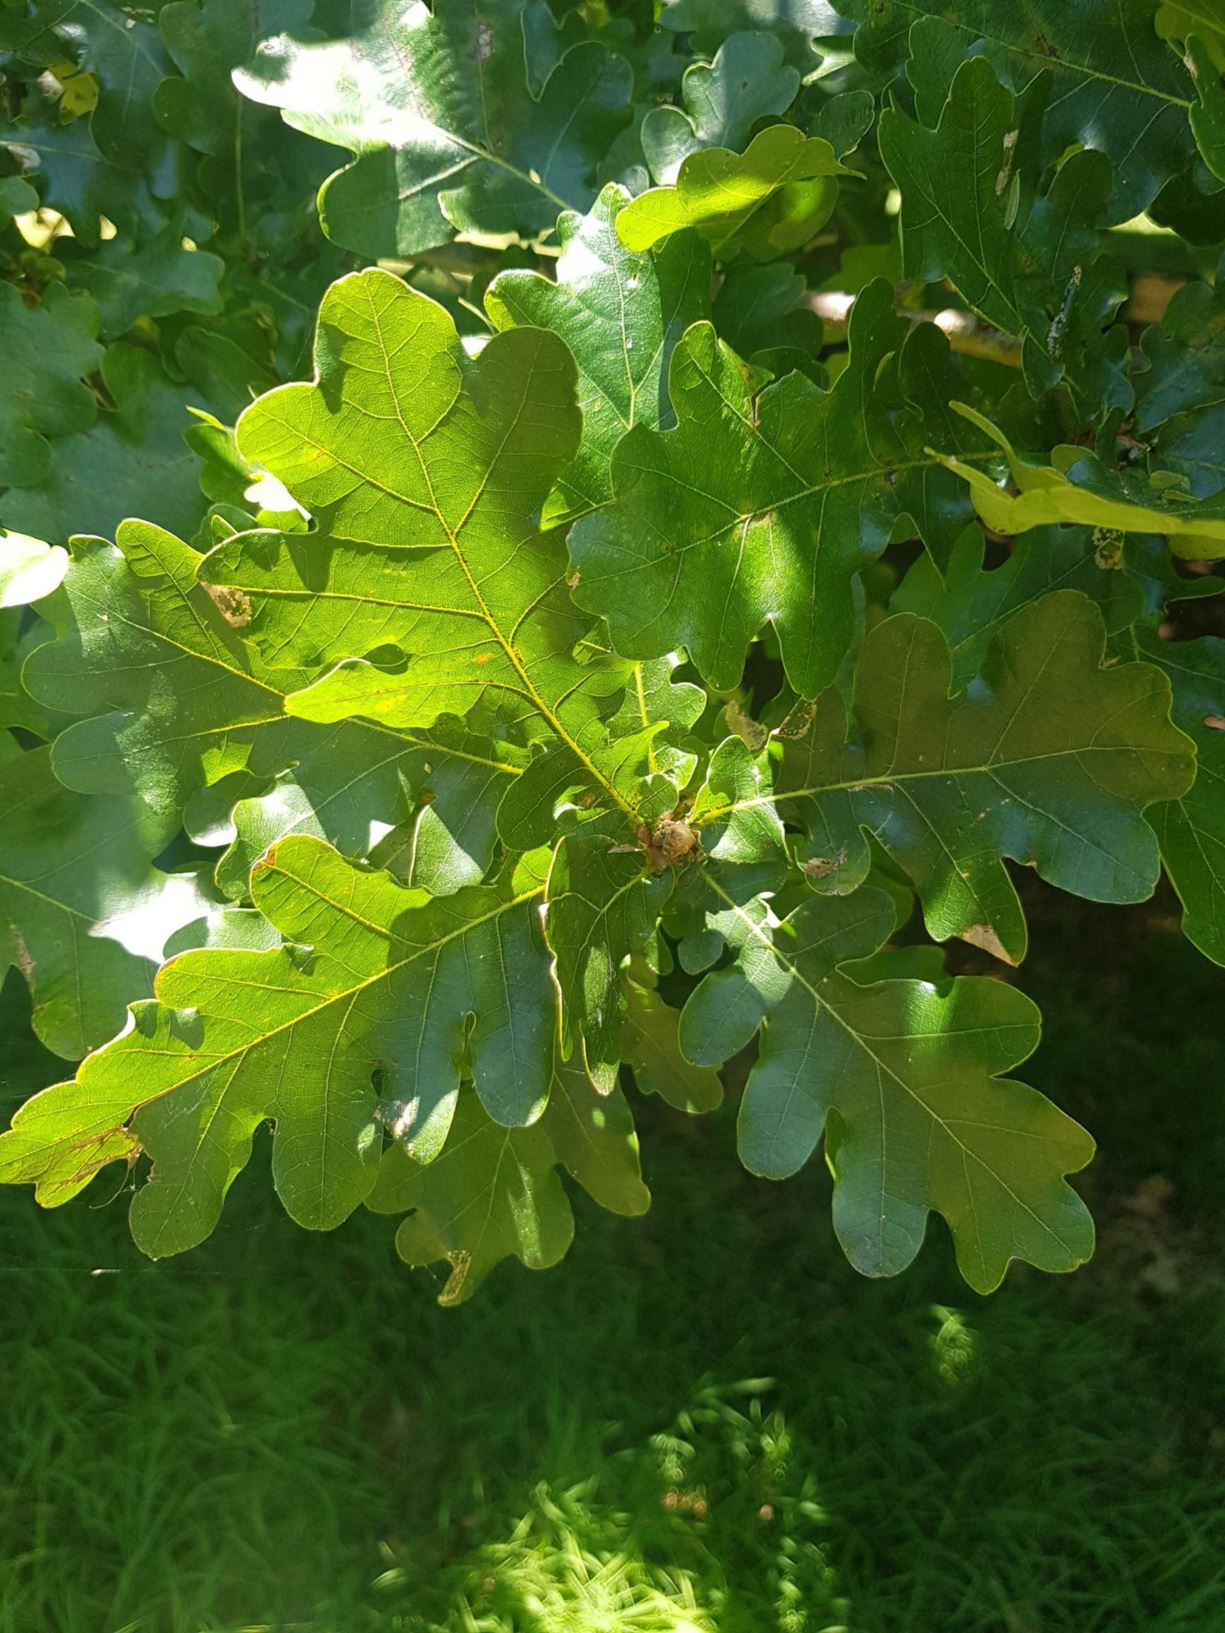 Quercus robur - English oak, common oak, pedunculate oak